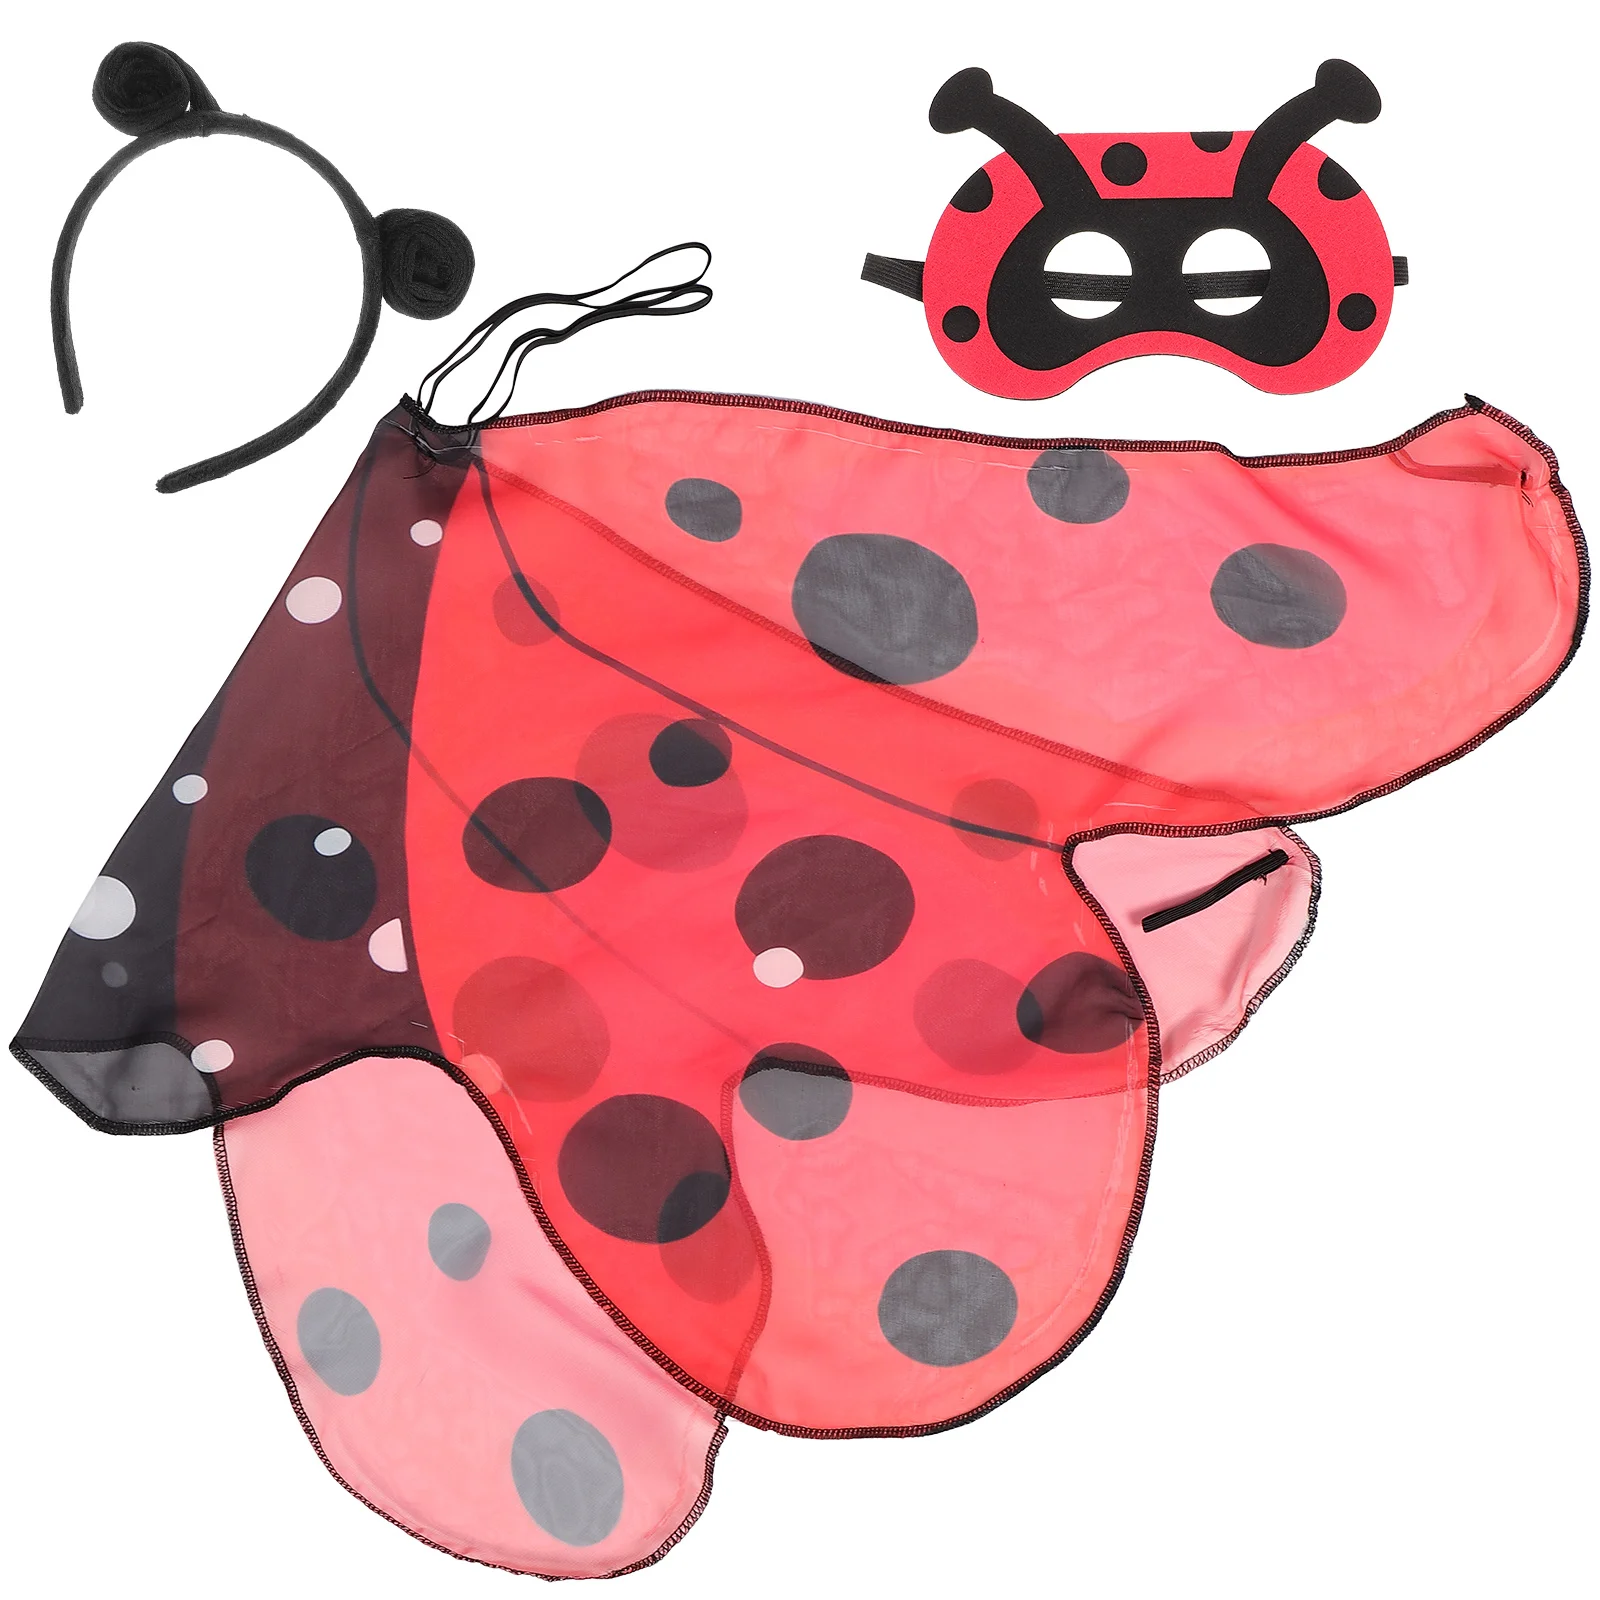 

1 Set Fairy Ladybug Accessories Ladybug Cosplay Mask Ladybug Wing Prop with Ladybug Headpiece